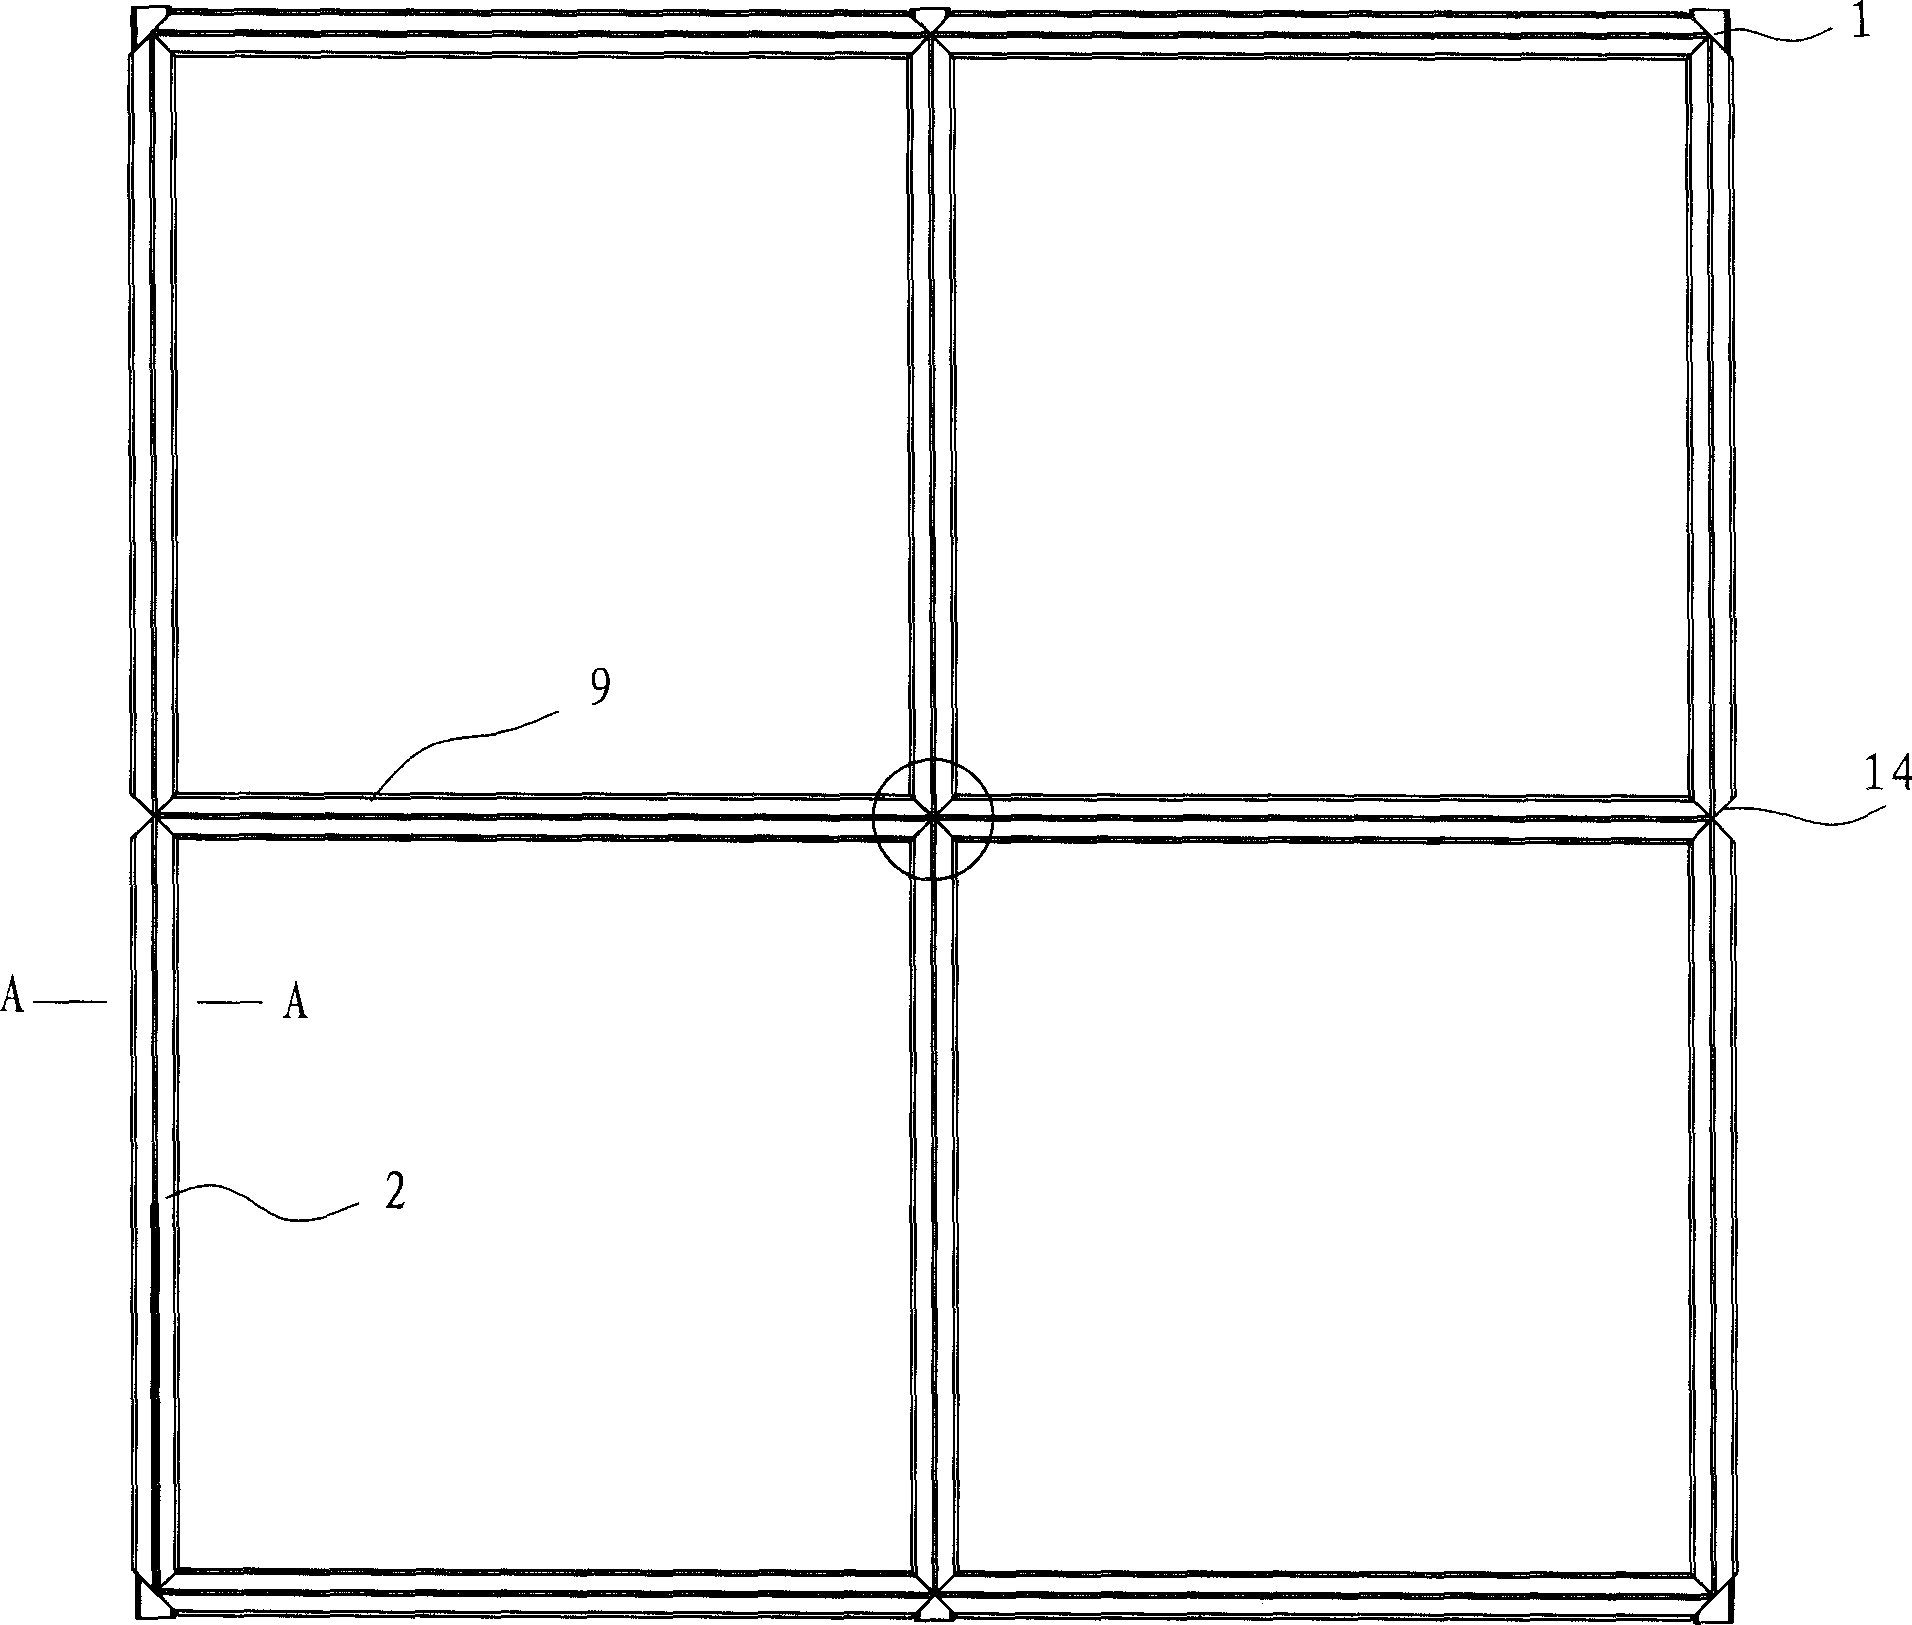 Keel frame for paving floor tiles